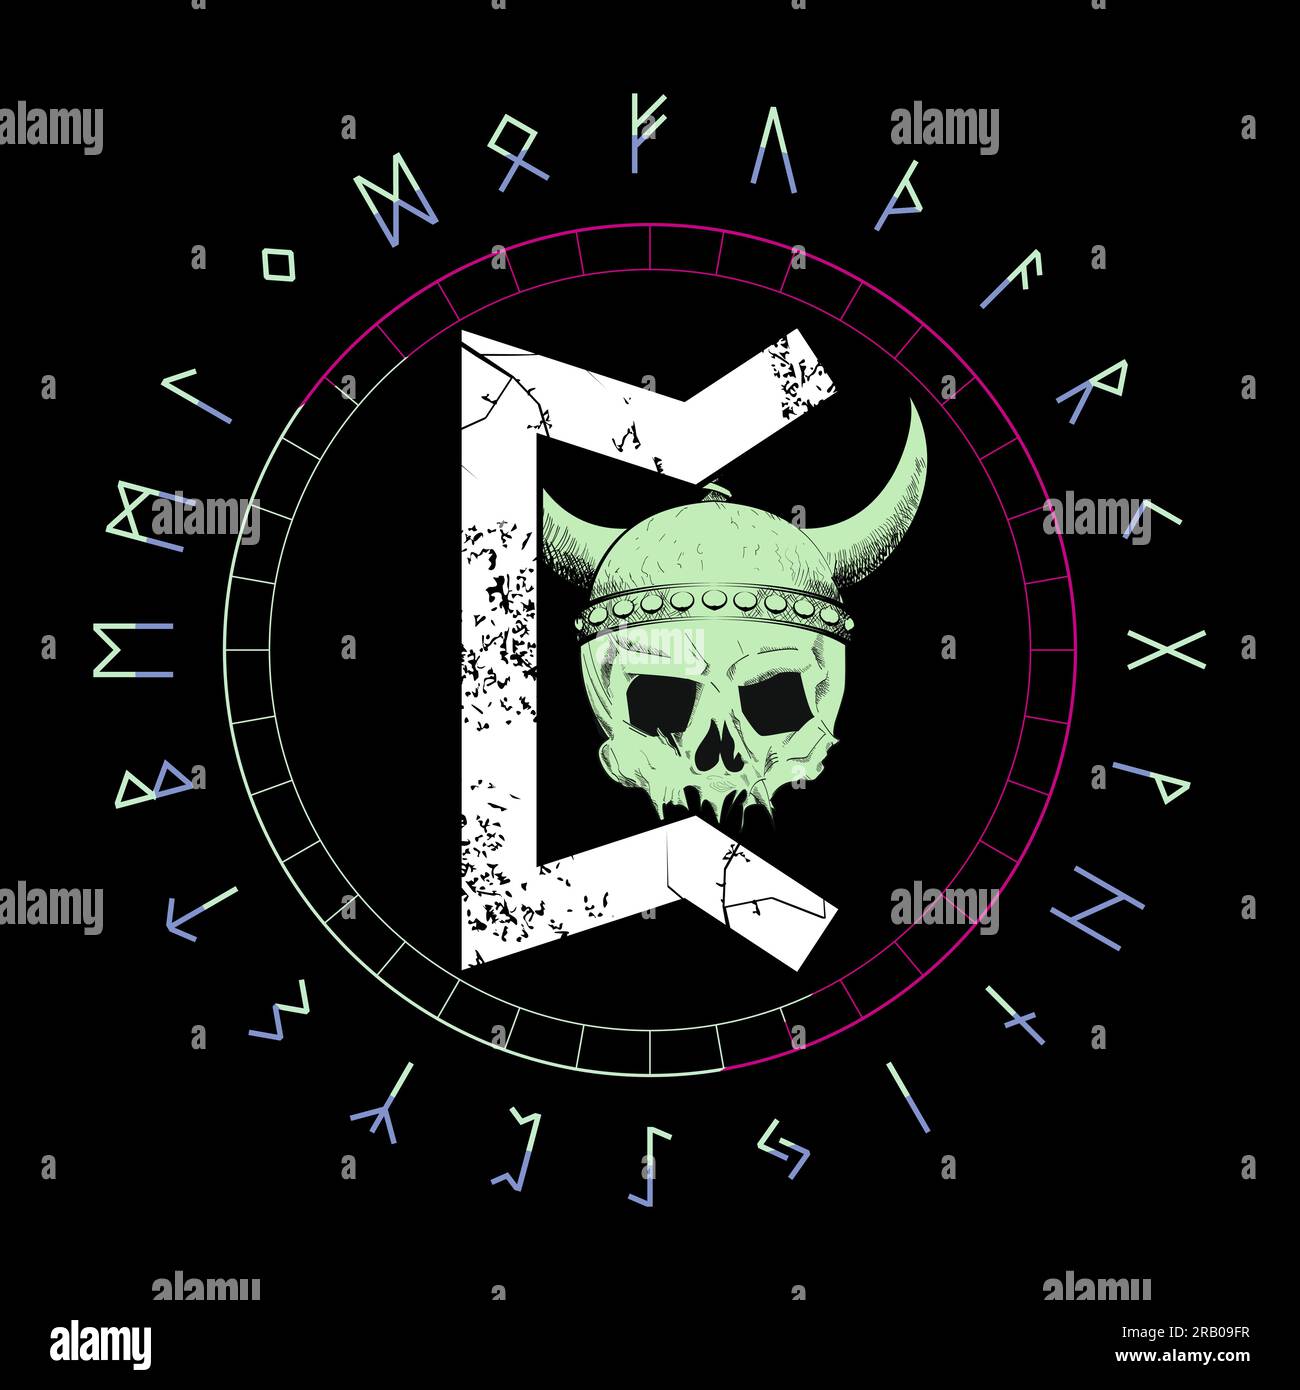 Design für ein T-Shirt mit runischem Schriftzug namens Perth neben einem wikinger-Schädel isoliert auf Schwarz. Rundes Alphabet in rundem Design. Stock Vektor